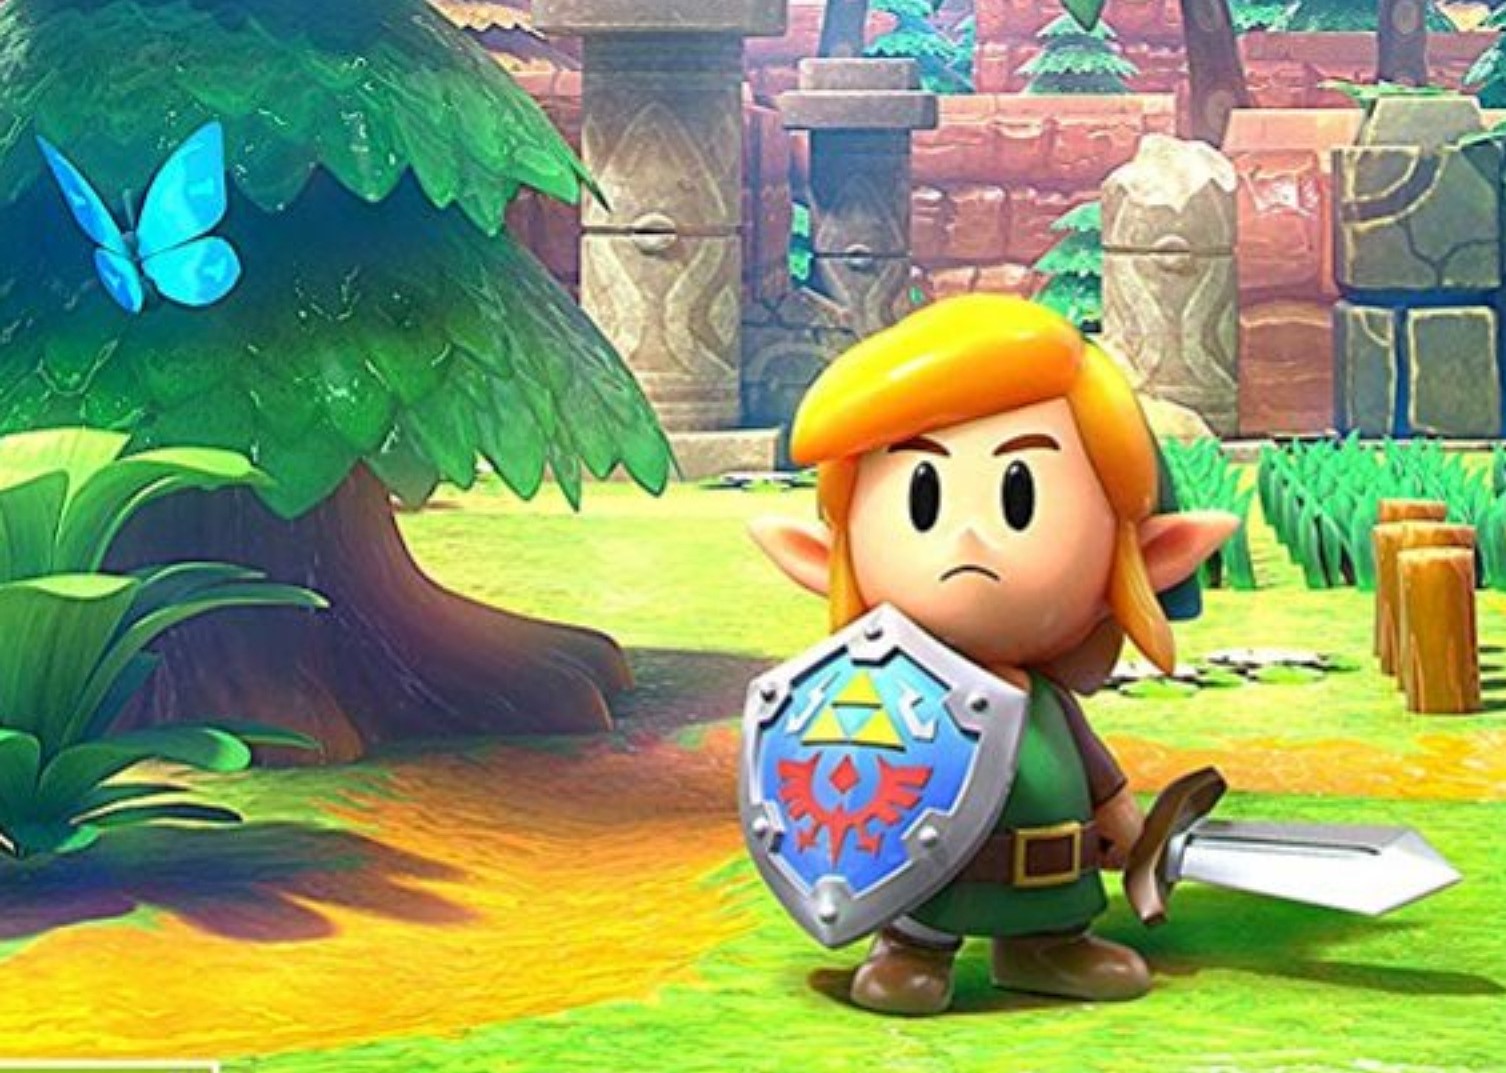 Review: The Legend of Zelda: Link's Awakening (Nintendo Switch